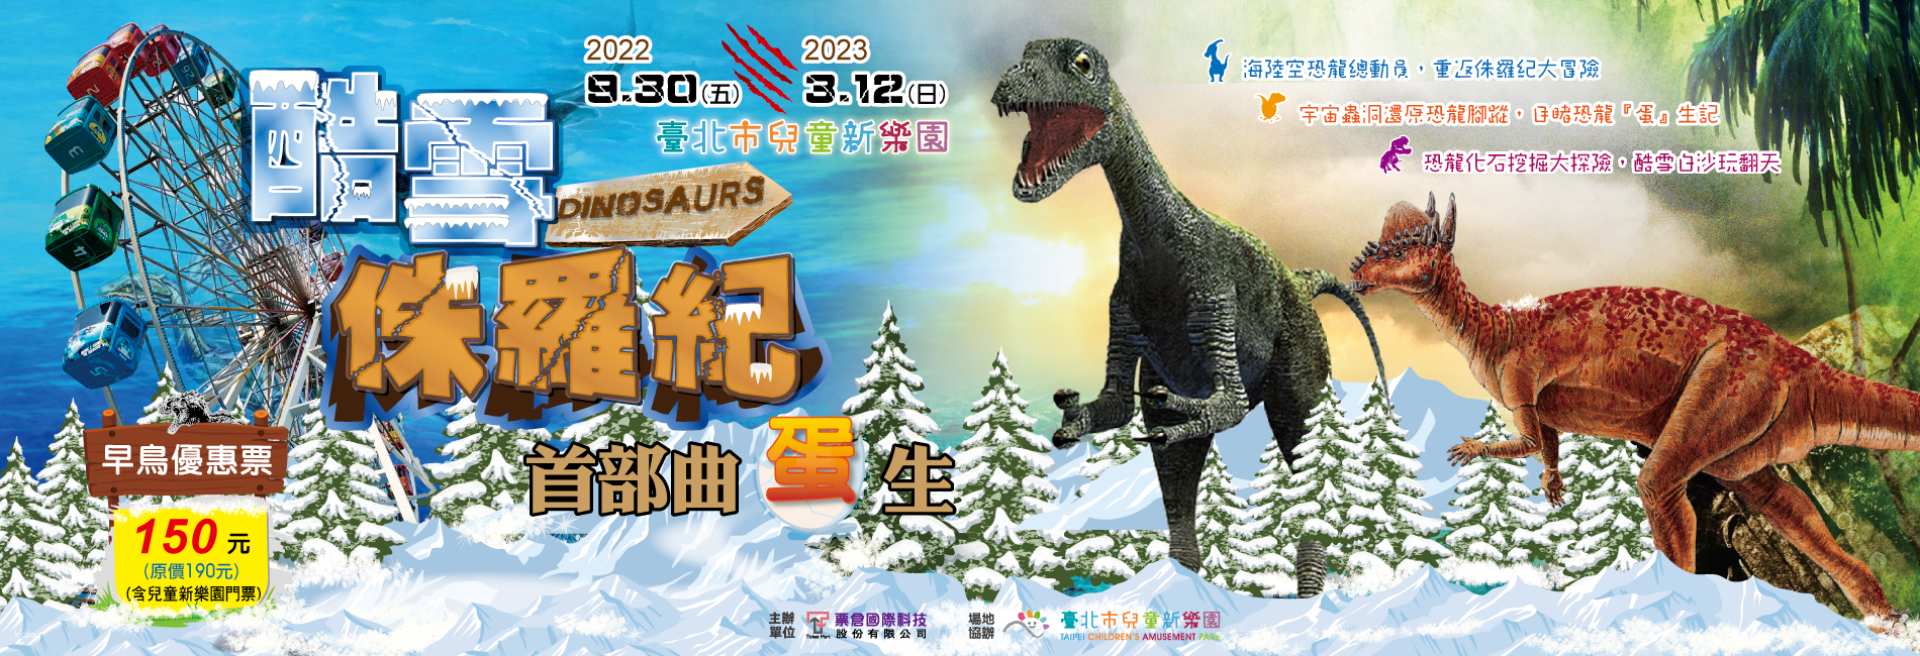 台北-酷雪侏羅紀首部曲 「蛋」生展覽| 含兒童新樂園入園門票